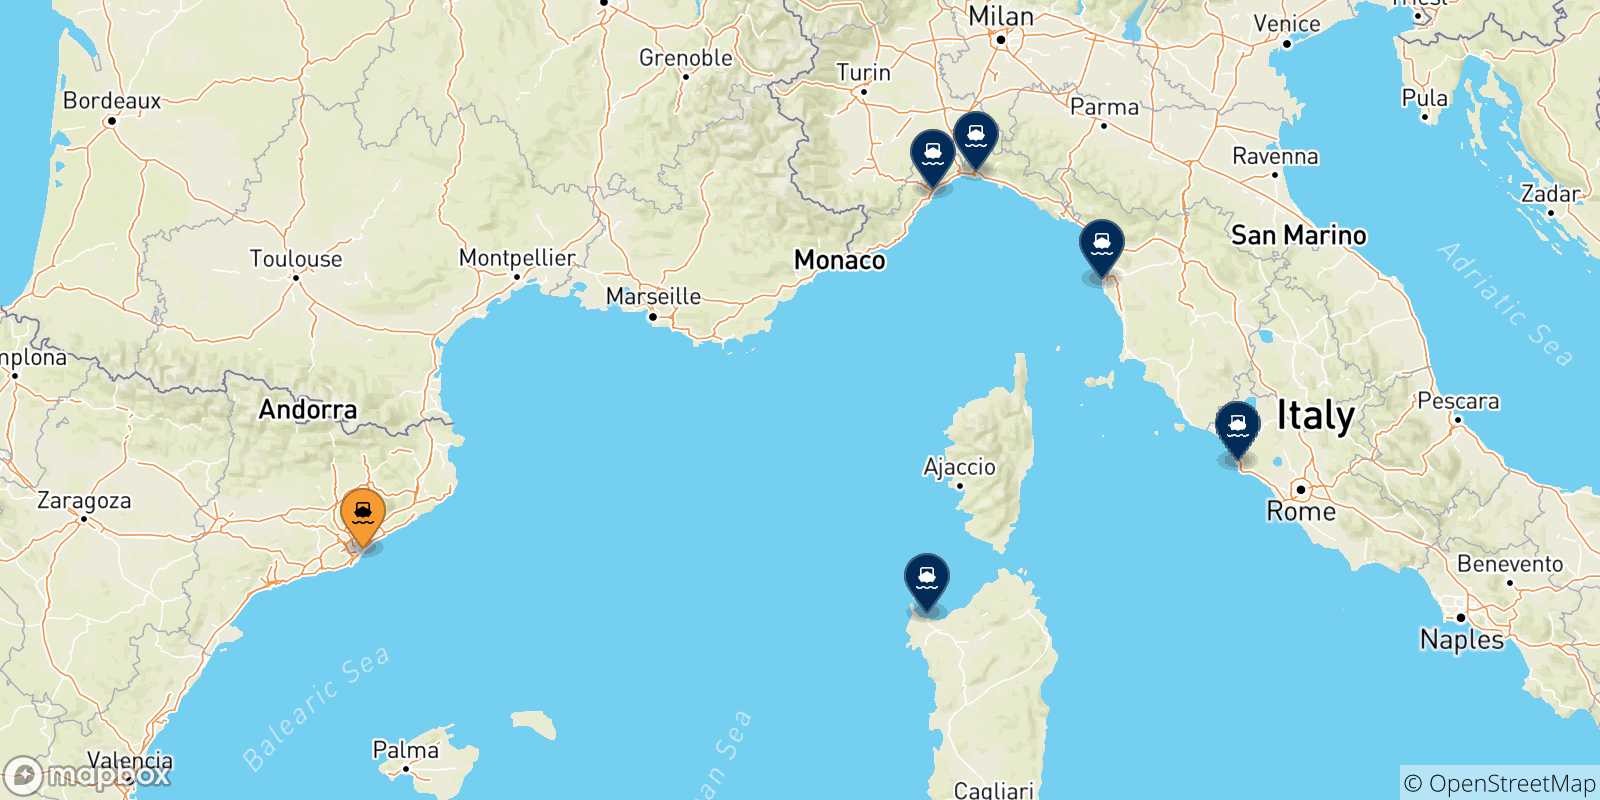 Mappa delle possibili rotte tra Barcellona e l'Italia